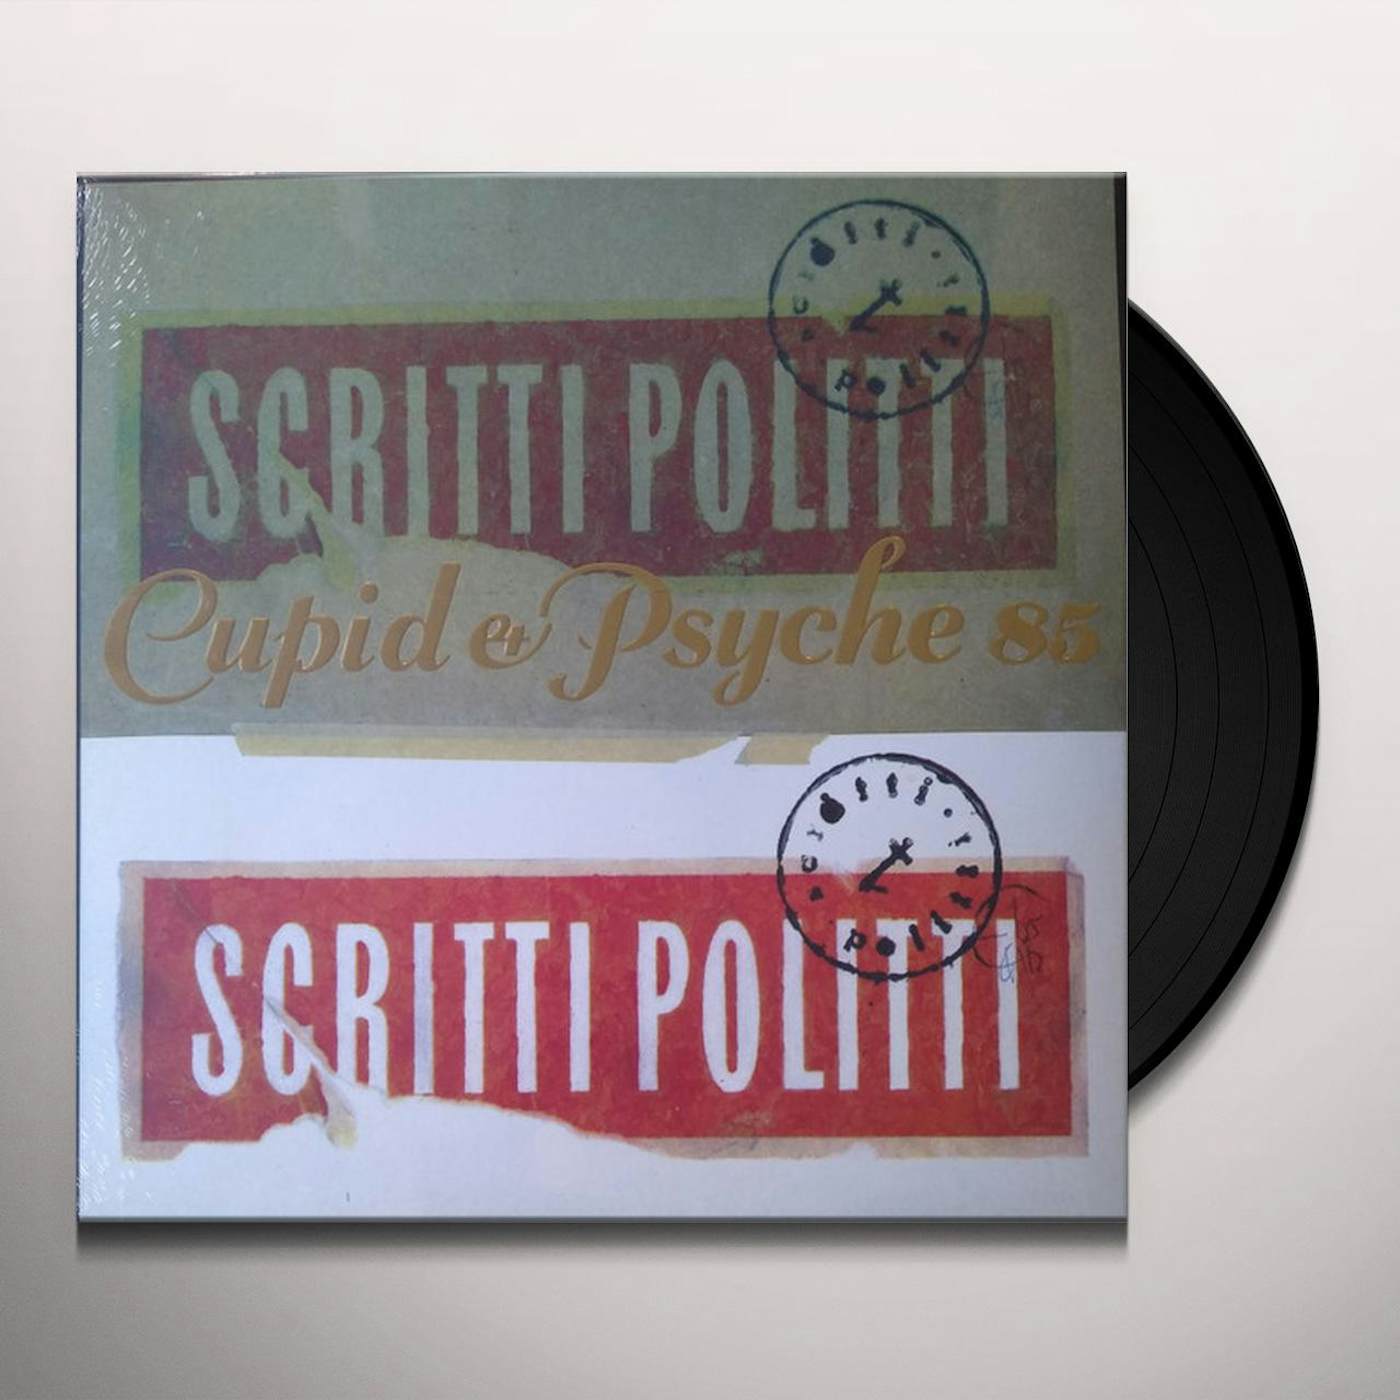 Scritti Politti Cupid & Psyche 85 Vinyl Record